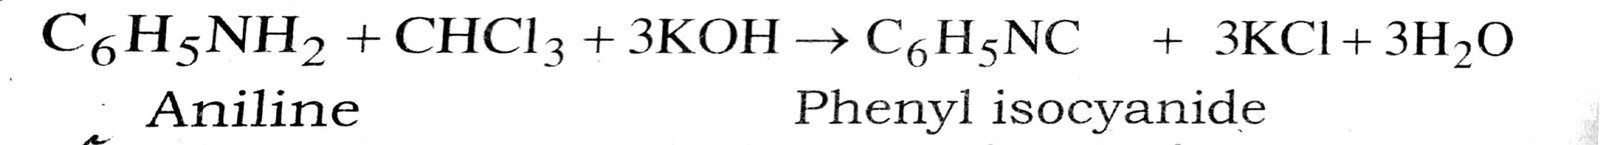 Ethanoic acid into propanoic acid